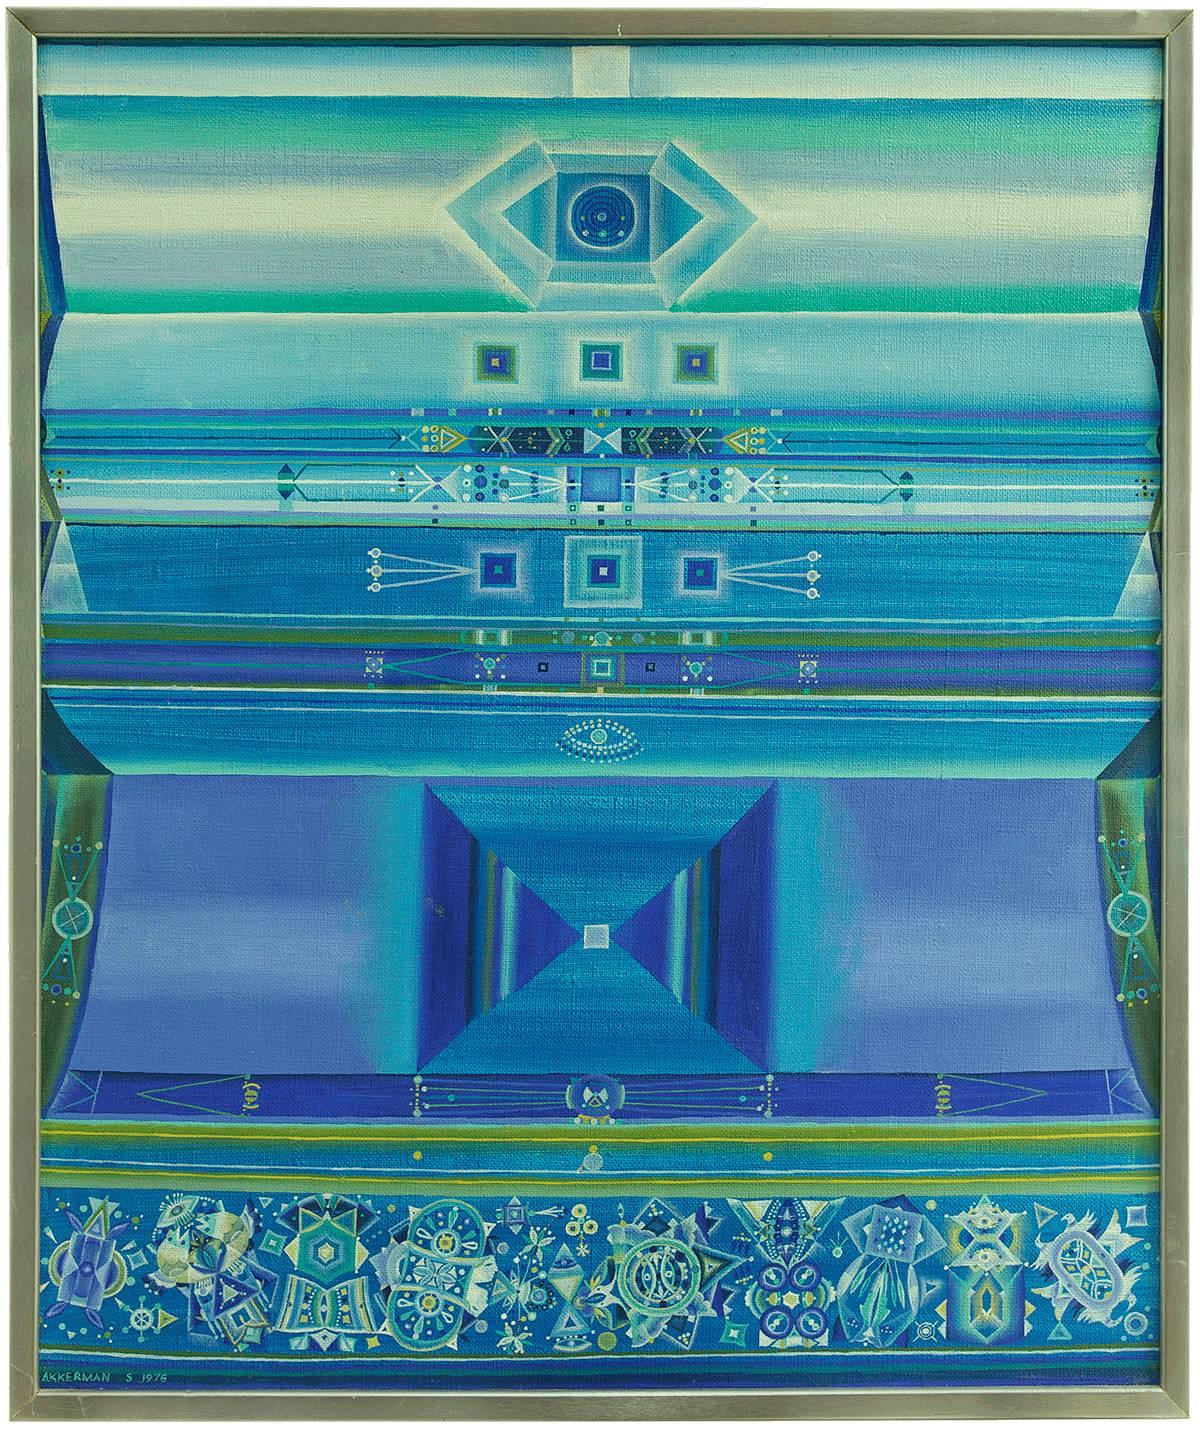 Abstract Painting Shmuel Ackerman - Les champs célestes d'avant-garde soviétiques, art israélien d'avant-garde, groupe Leviathan